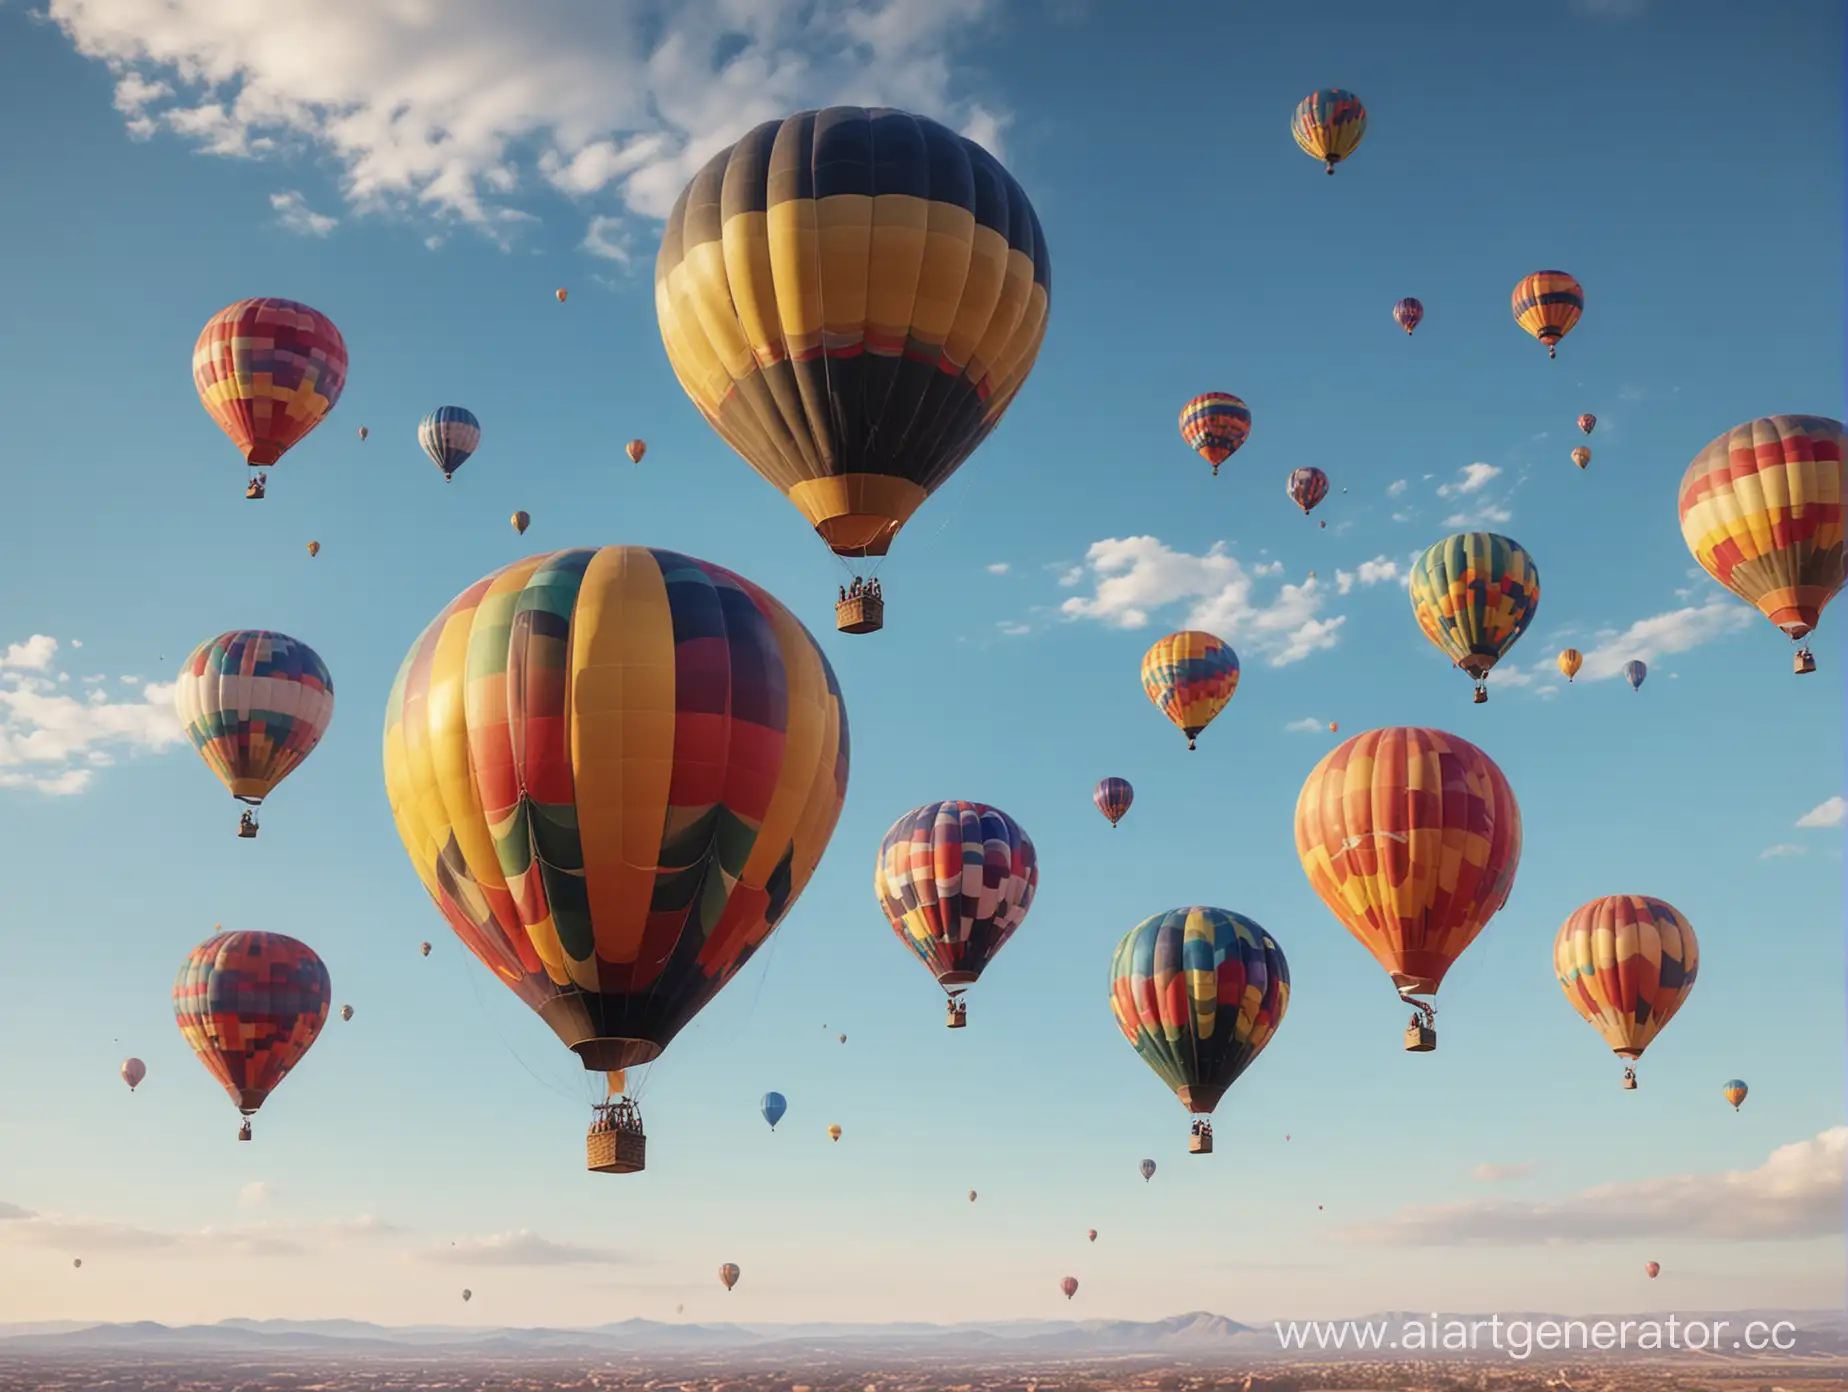 полеты на воздушных шарах, много разноцветных, вид с земли на фоне ясного неба,  реализм
